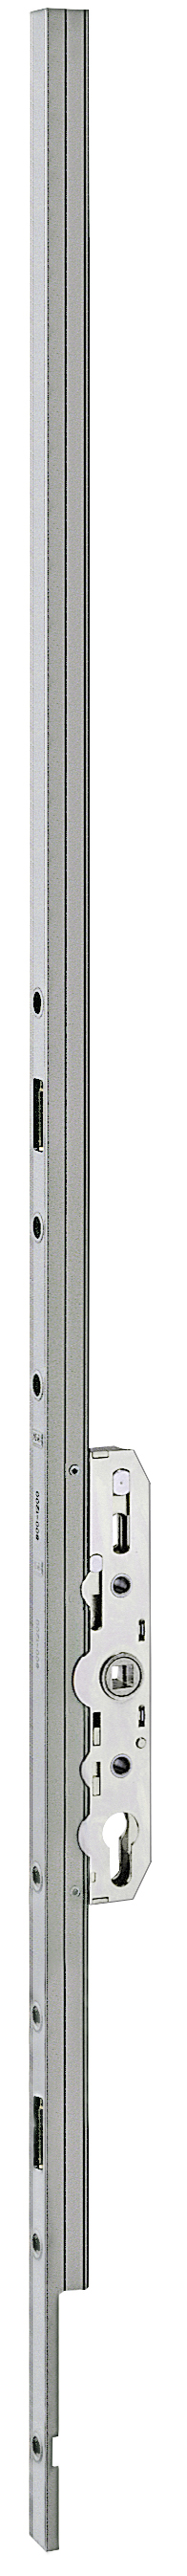 AGB -  Cremonese ALZANTE CLIMATECH per alzante scorrevole altezza maniglia fissa con chiusura a perni - gr / dim. 02 - entrata 27,5 - alt. man. 1000 - lbb/hbb 1170-1800